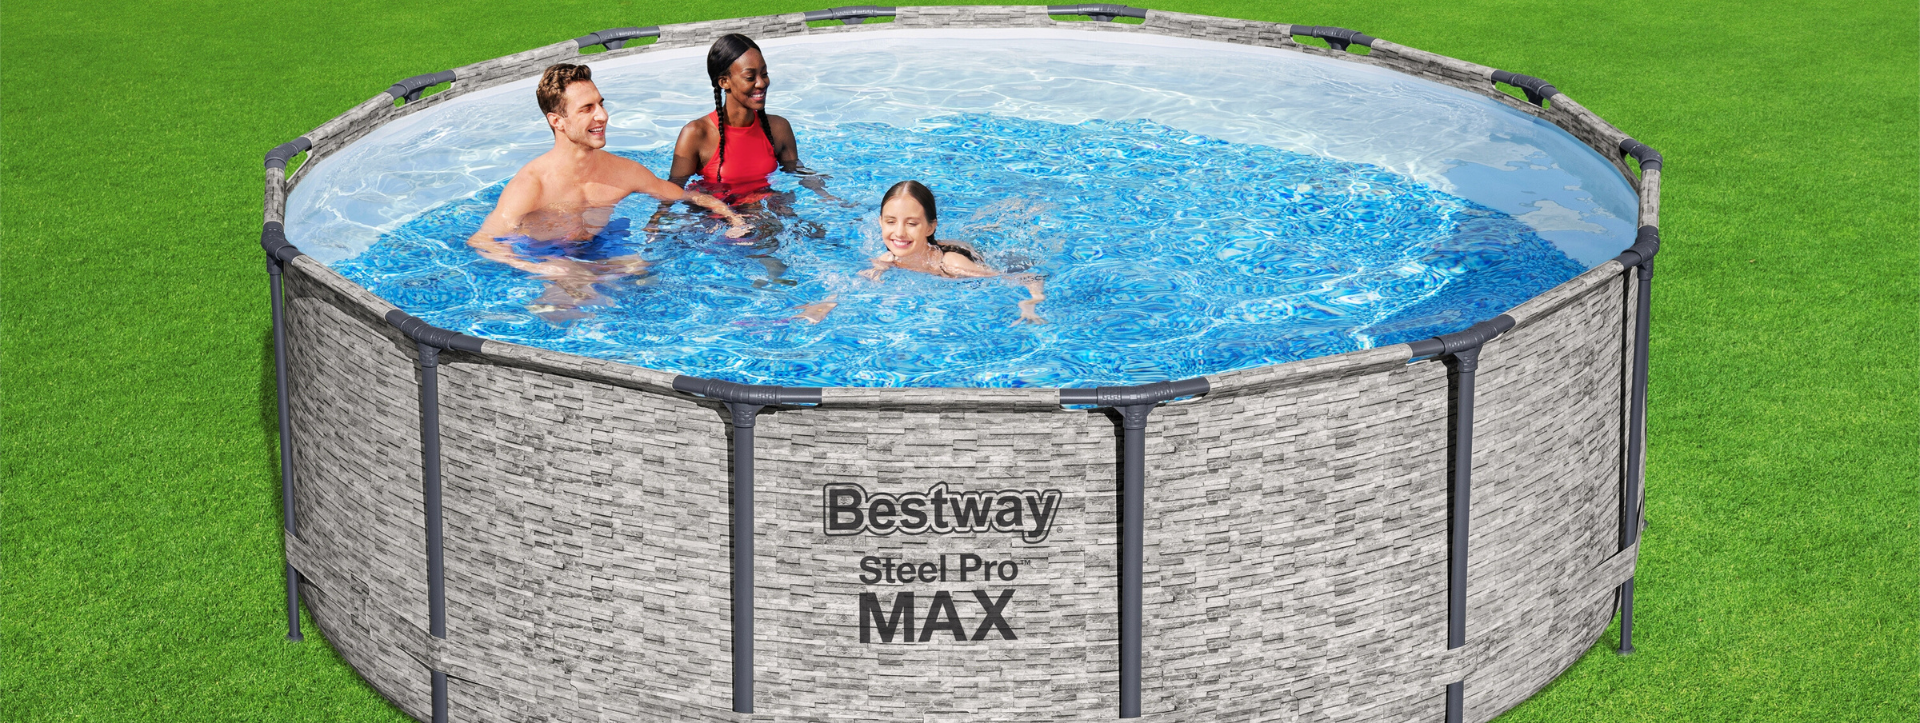 Comment installer une piscine hors sol Steel Pro™ et Steel Pro Max™ ?